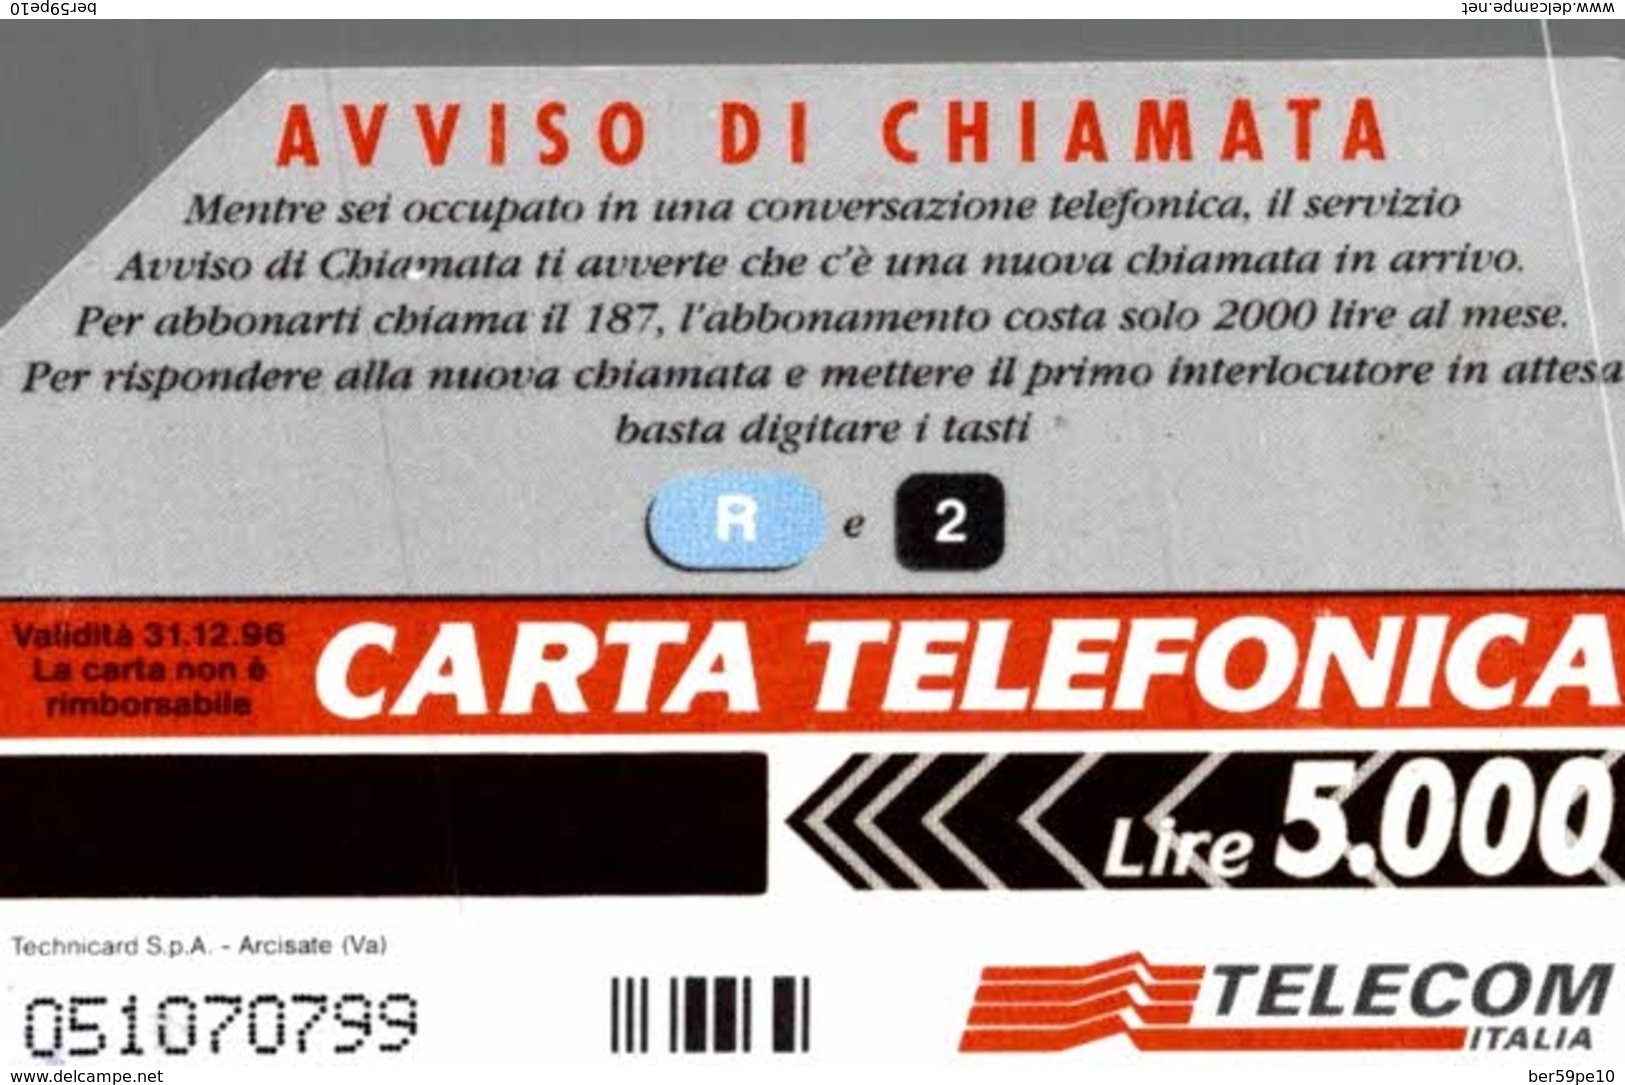 ITALIE CARTA TELEFONICA  R2 - AVVISO DI CHIAMATA   LIRE 5.000 - Collezioni